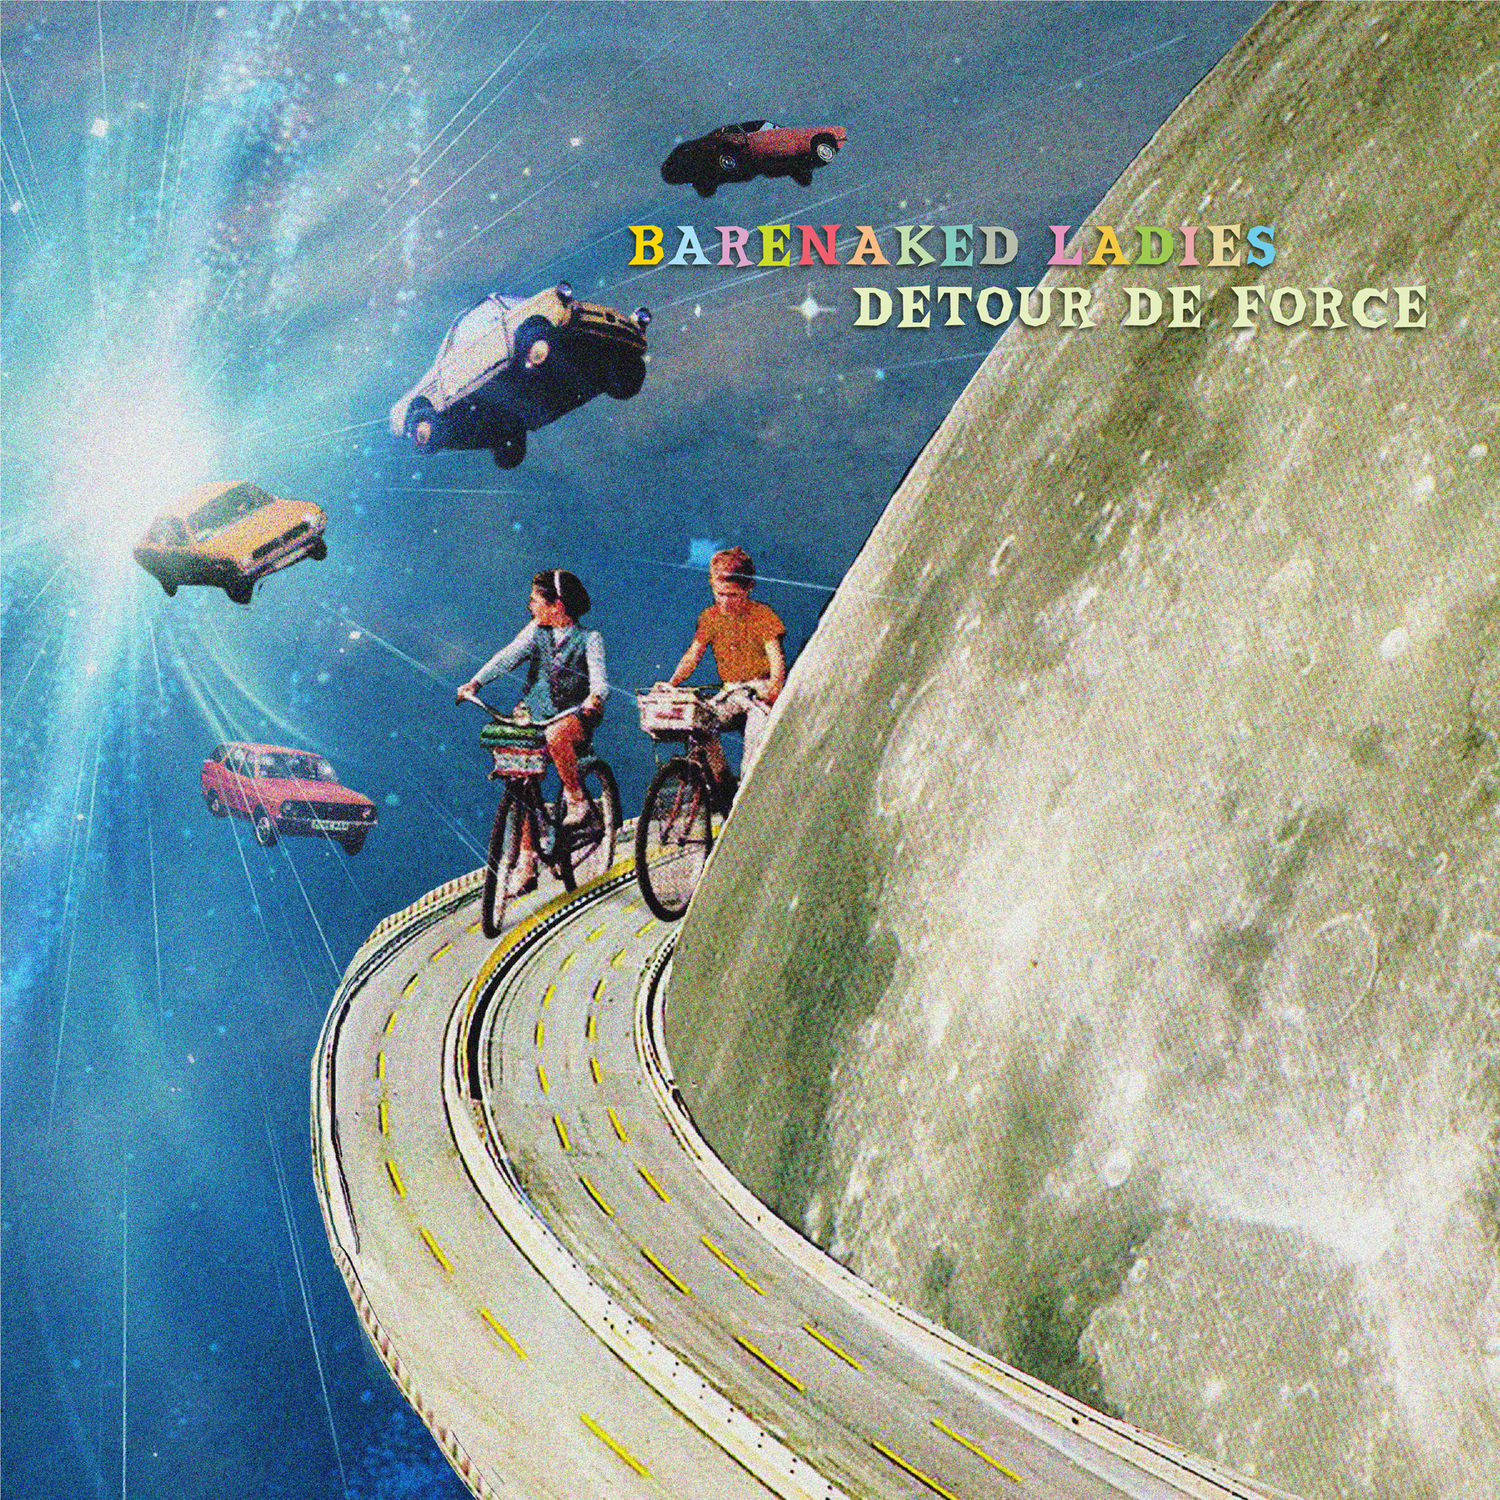 Barenaked Ladies - Detour de Force (2021) [FLAC 24bit/96kHz]